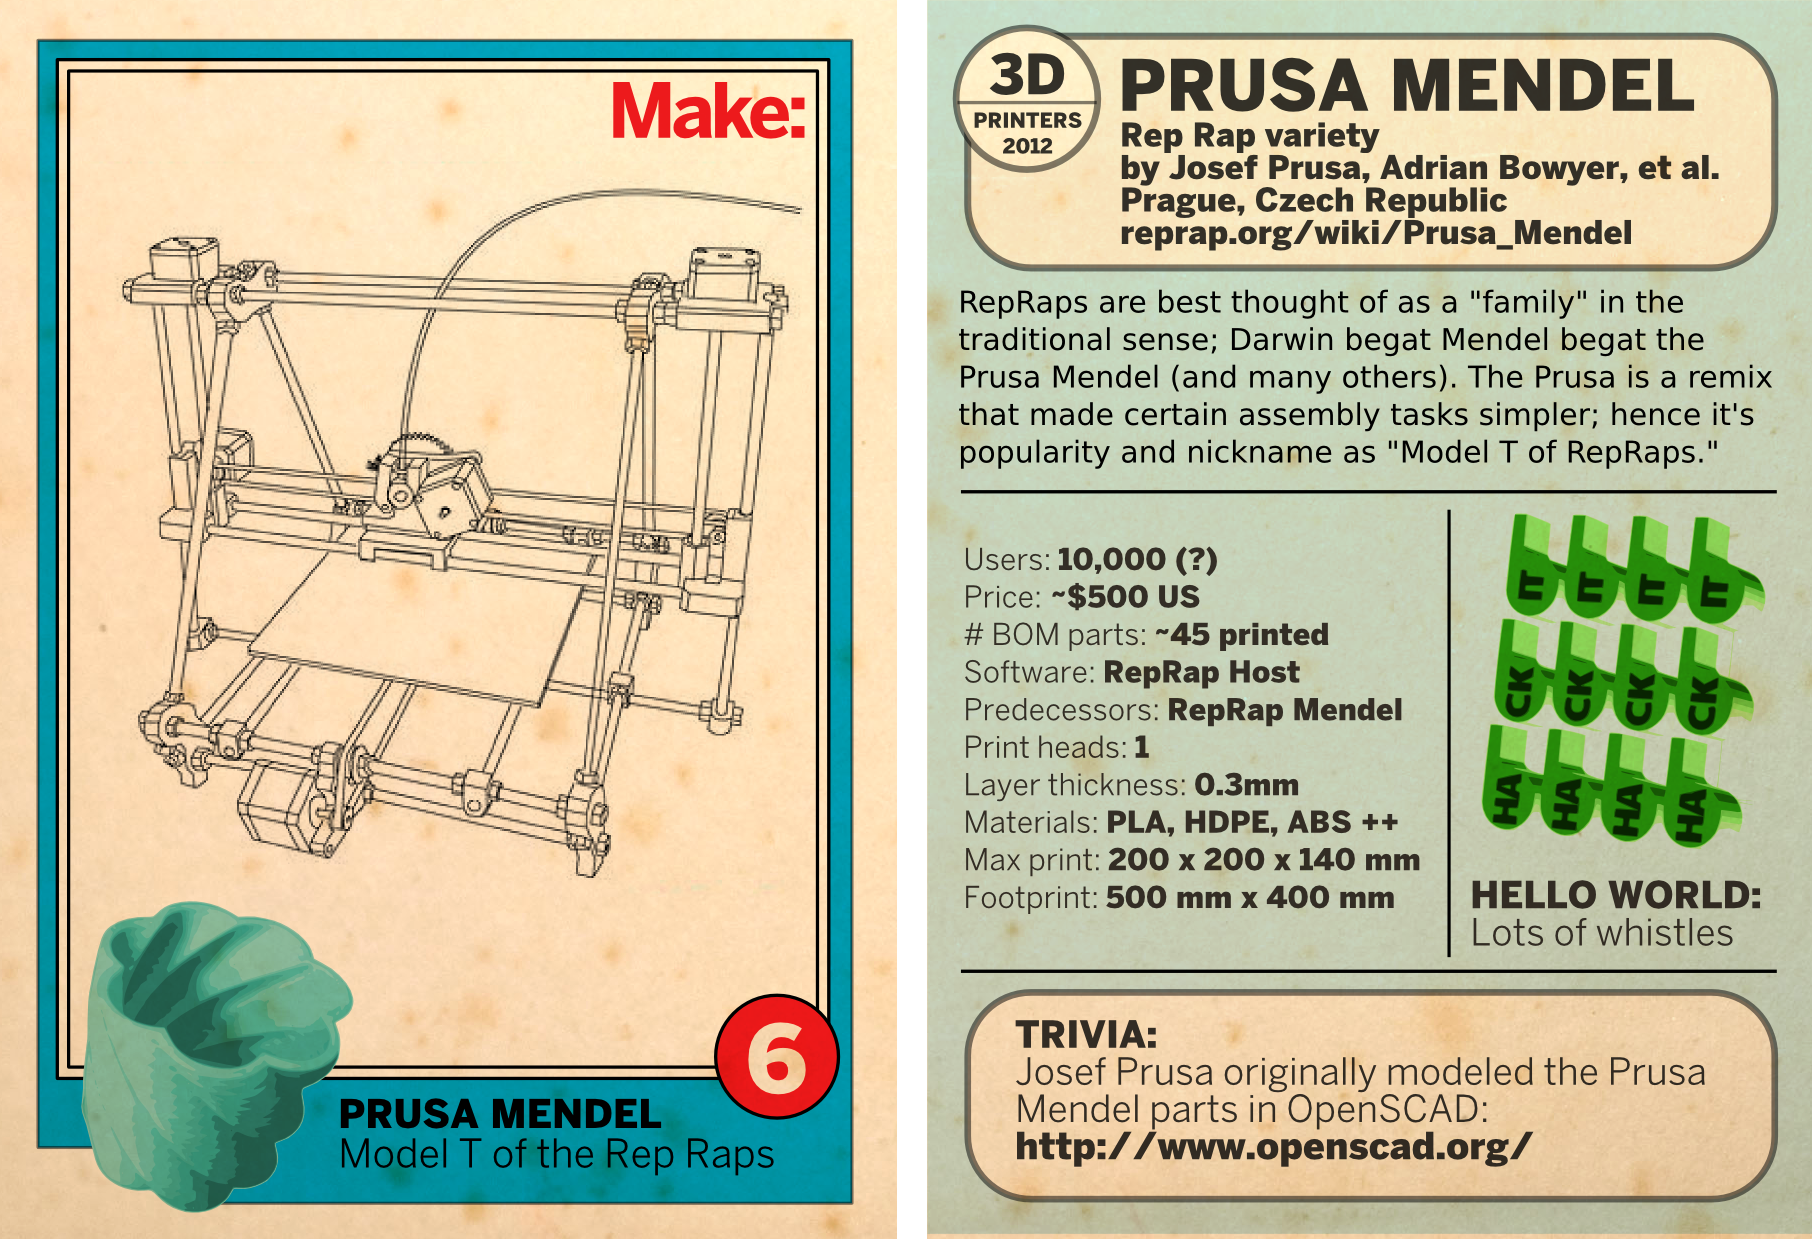 The Prusa Mendel